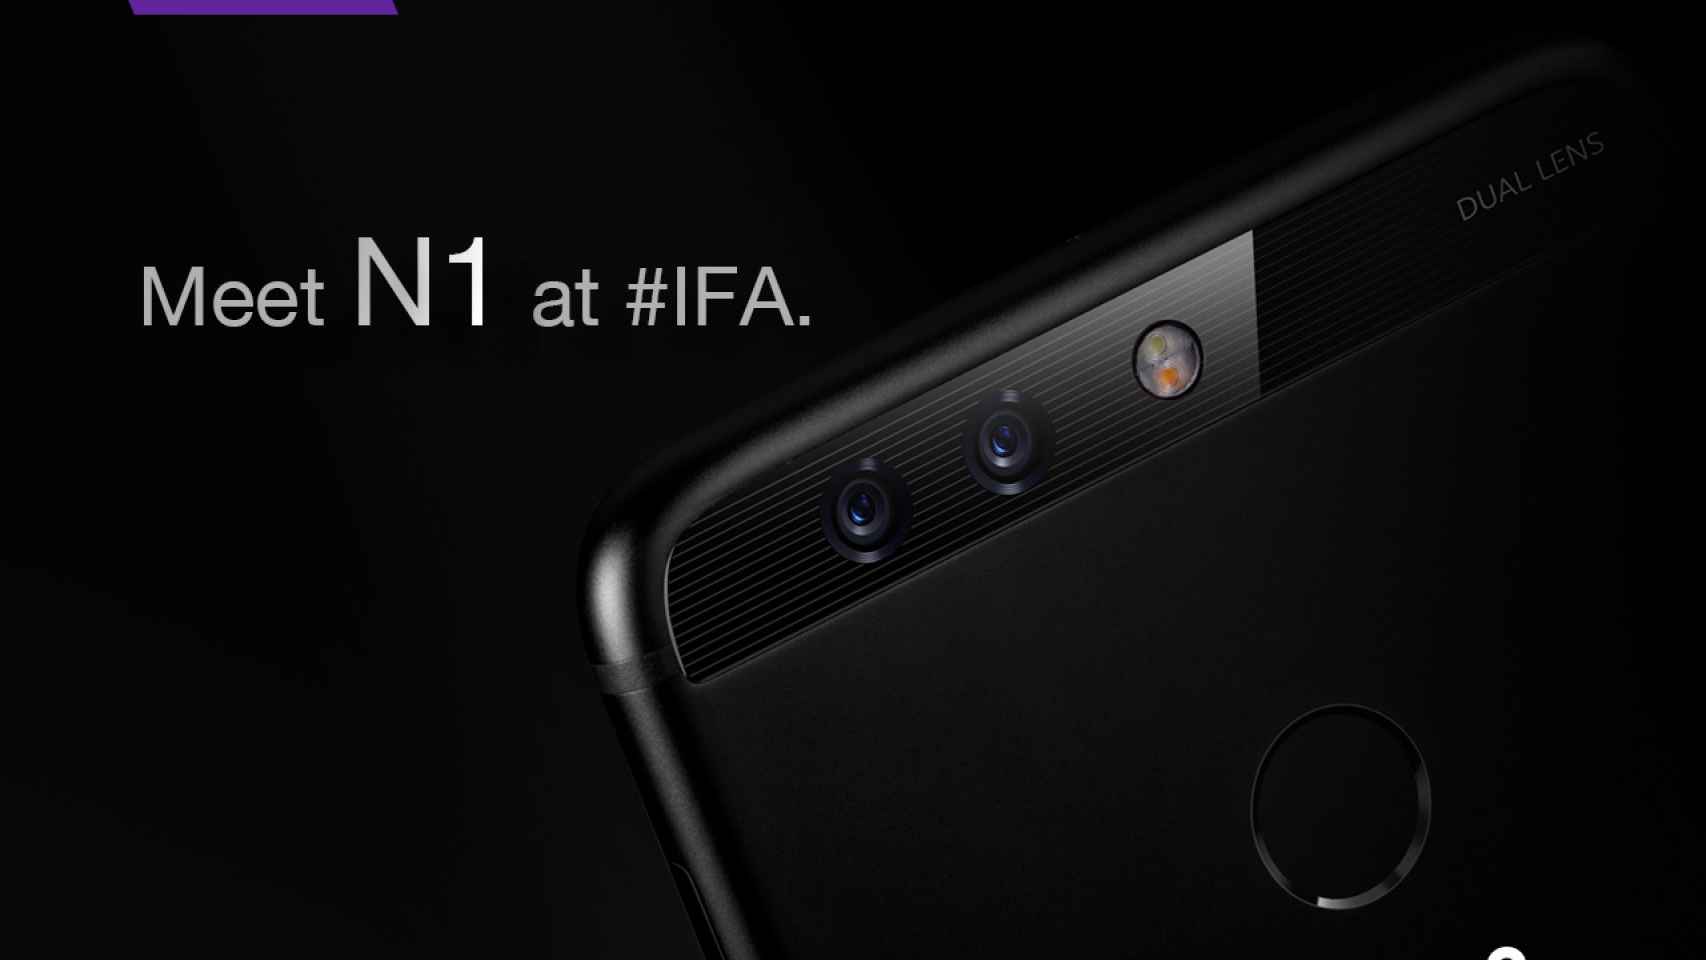 N1, el nuevo smartphone de Neffos se presenta en el IFA 2017